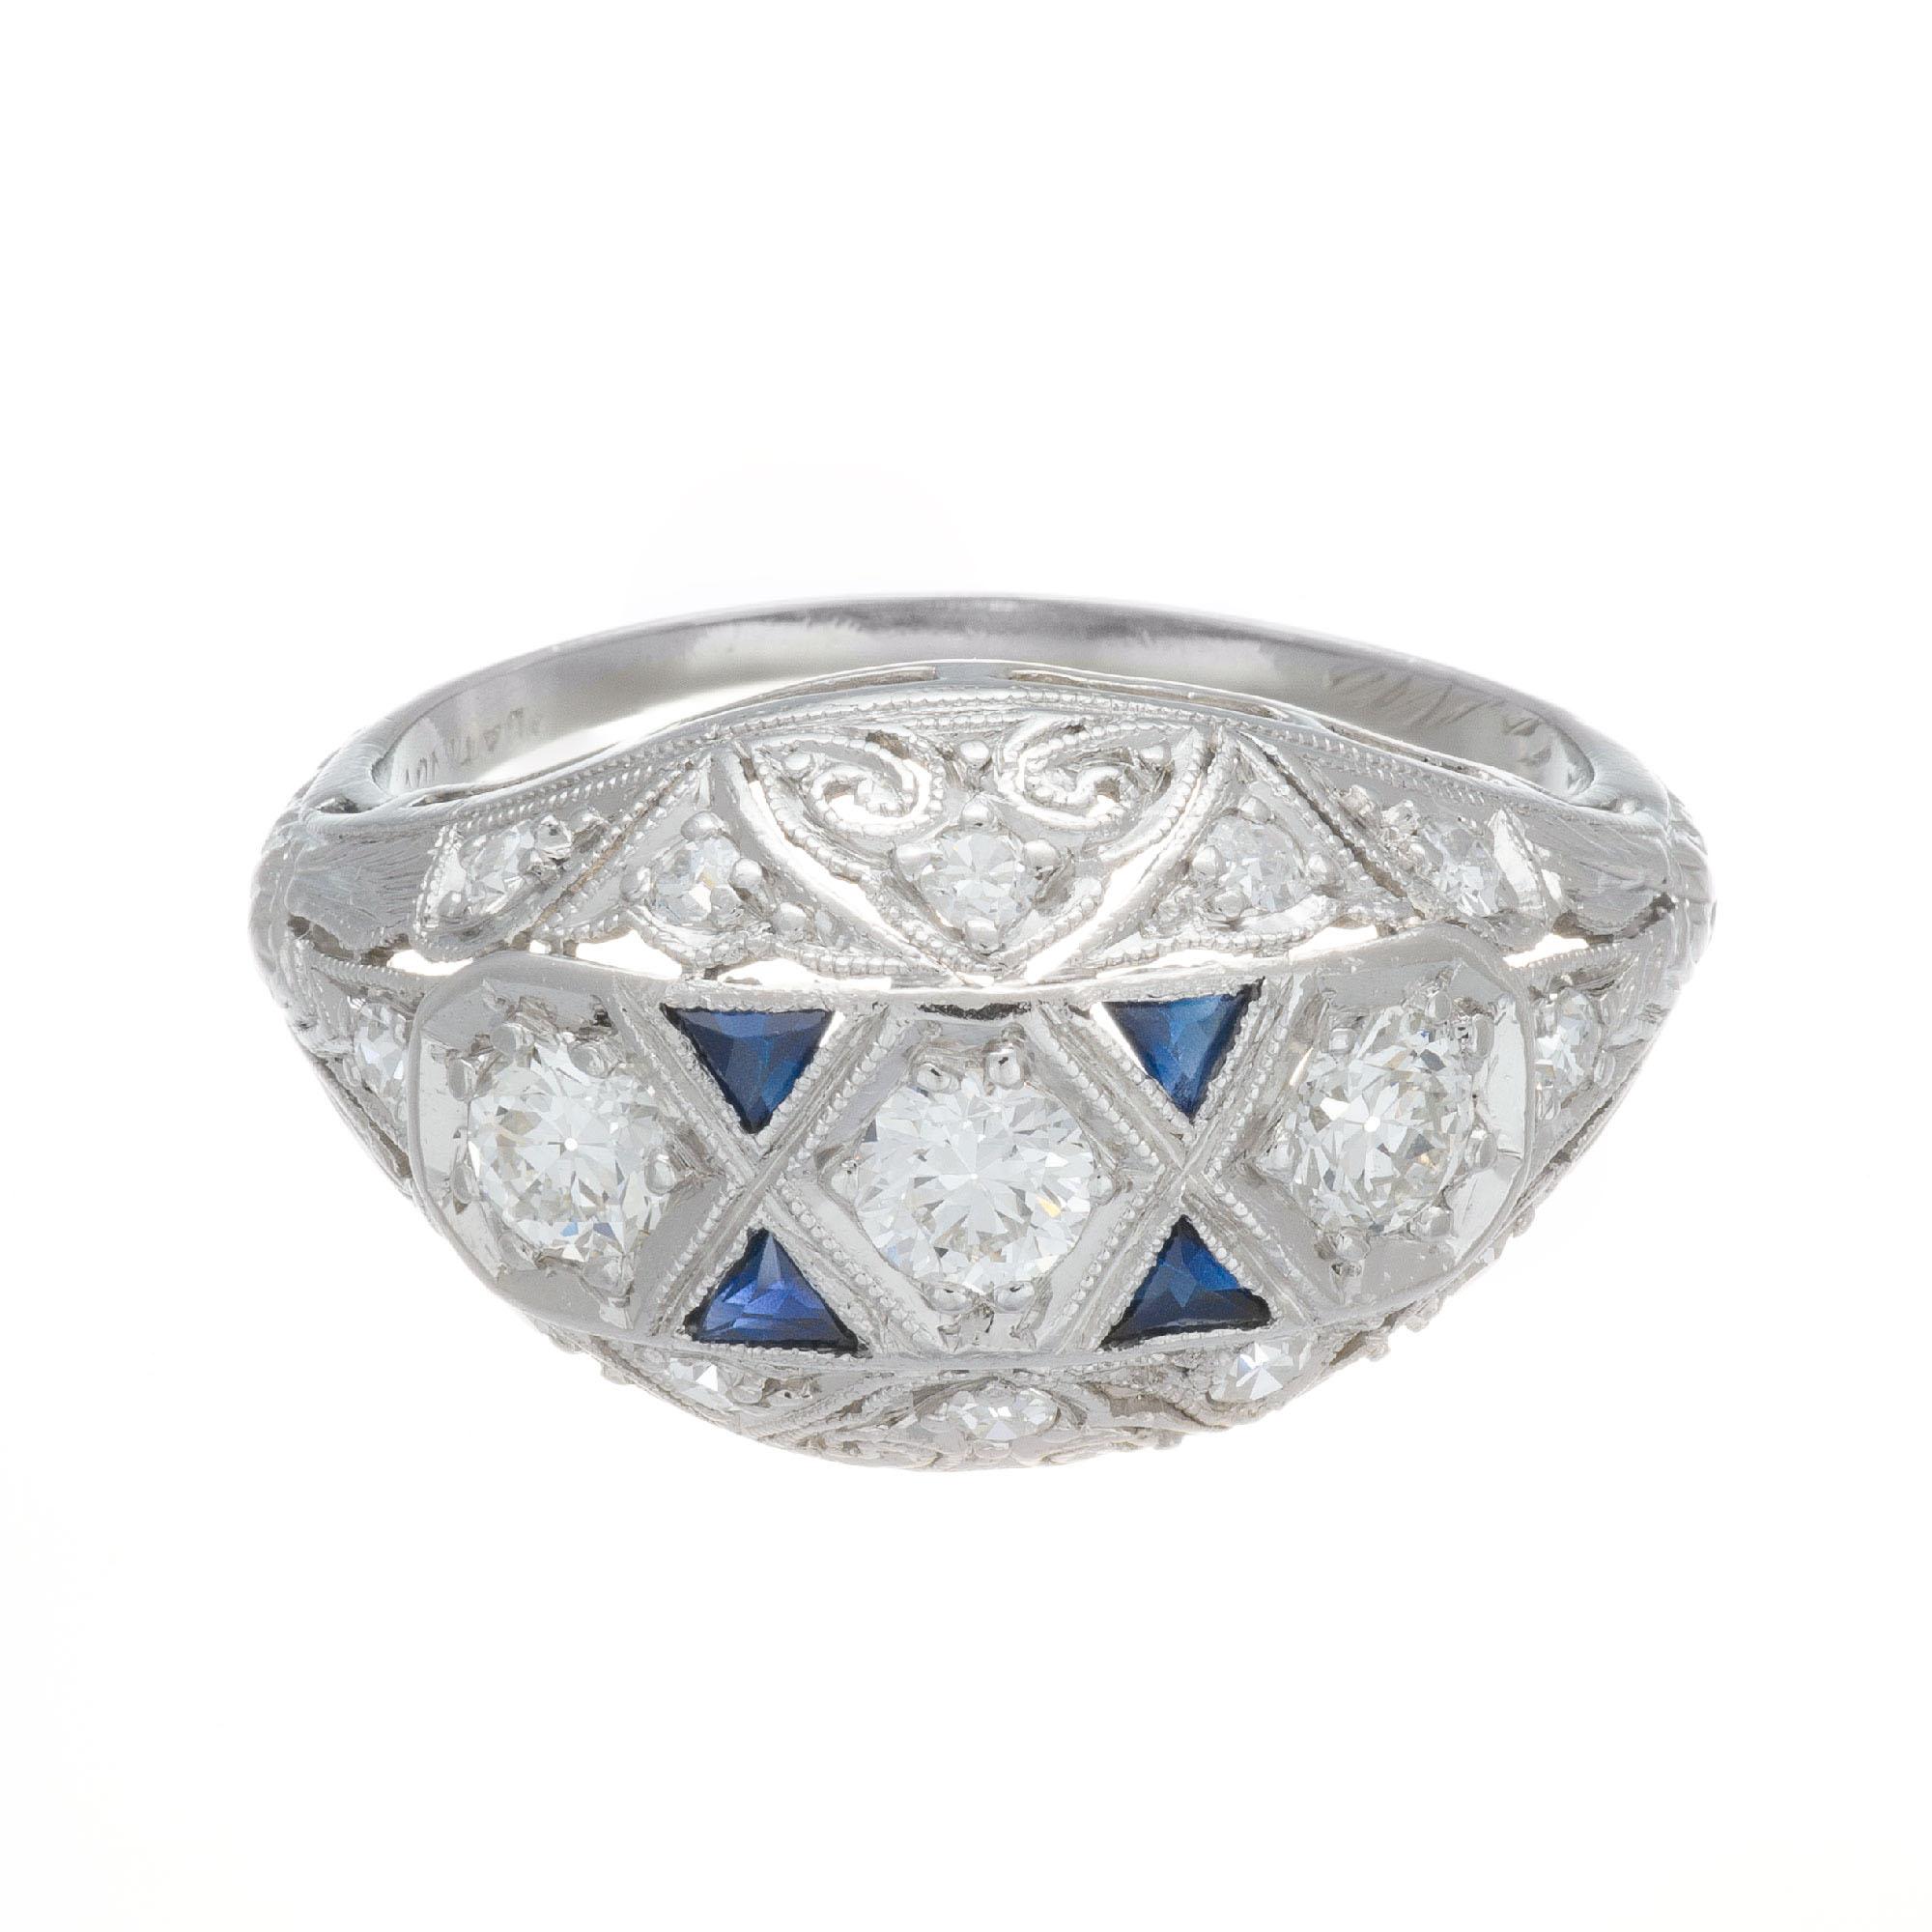 Art Deco 1920's Diamant und Saphir Verlobungsring. 3 Zentrum Diamanten mit 4 Dreieck geschnitten und rund alten Euro Diamant Akzent Steine in einer handgefertigten durchbohrt Perle gesetzt Kuppel Verlobungsring. 

15 Diamanten im alten europäischen